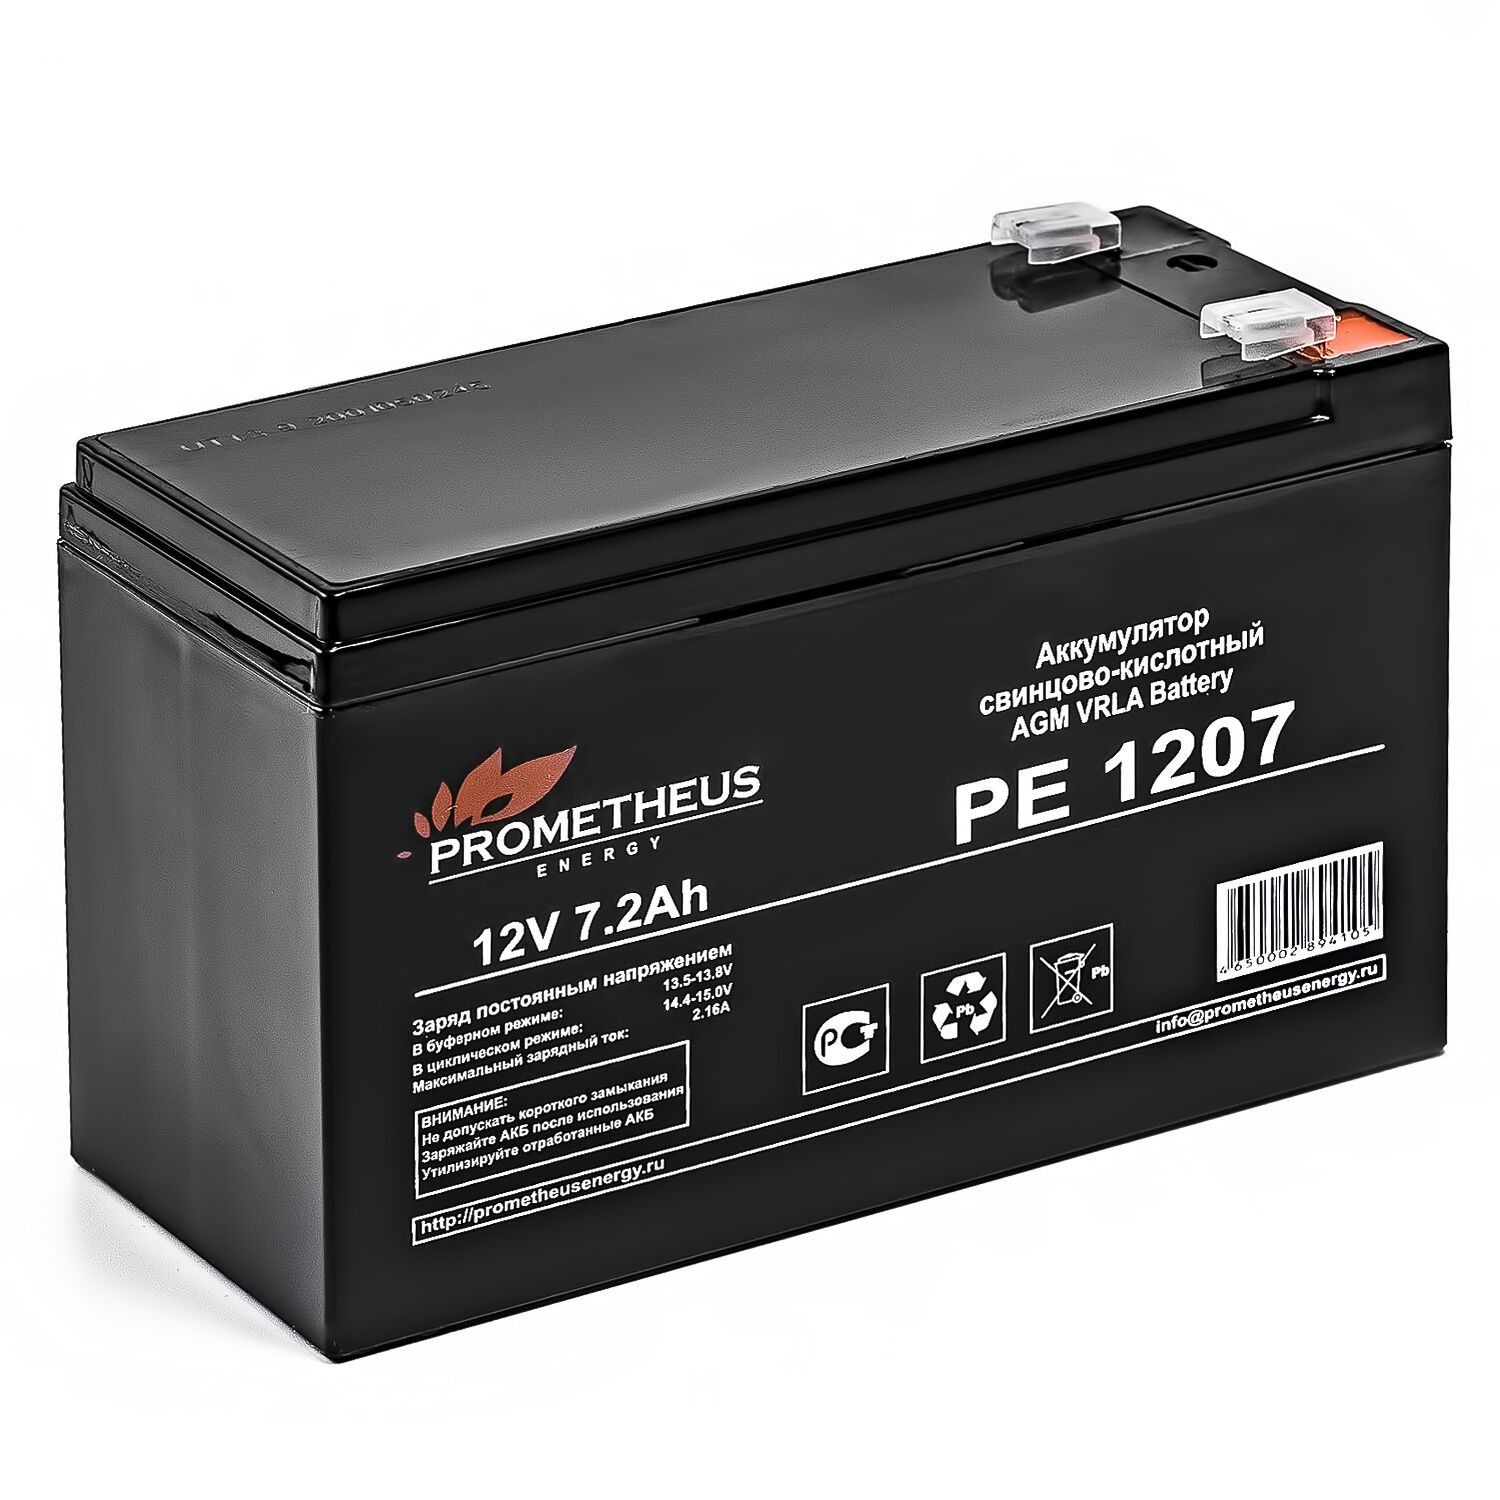 Аккумулятор свинцово-кислотный PE 1207 12V 7.2Ah